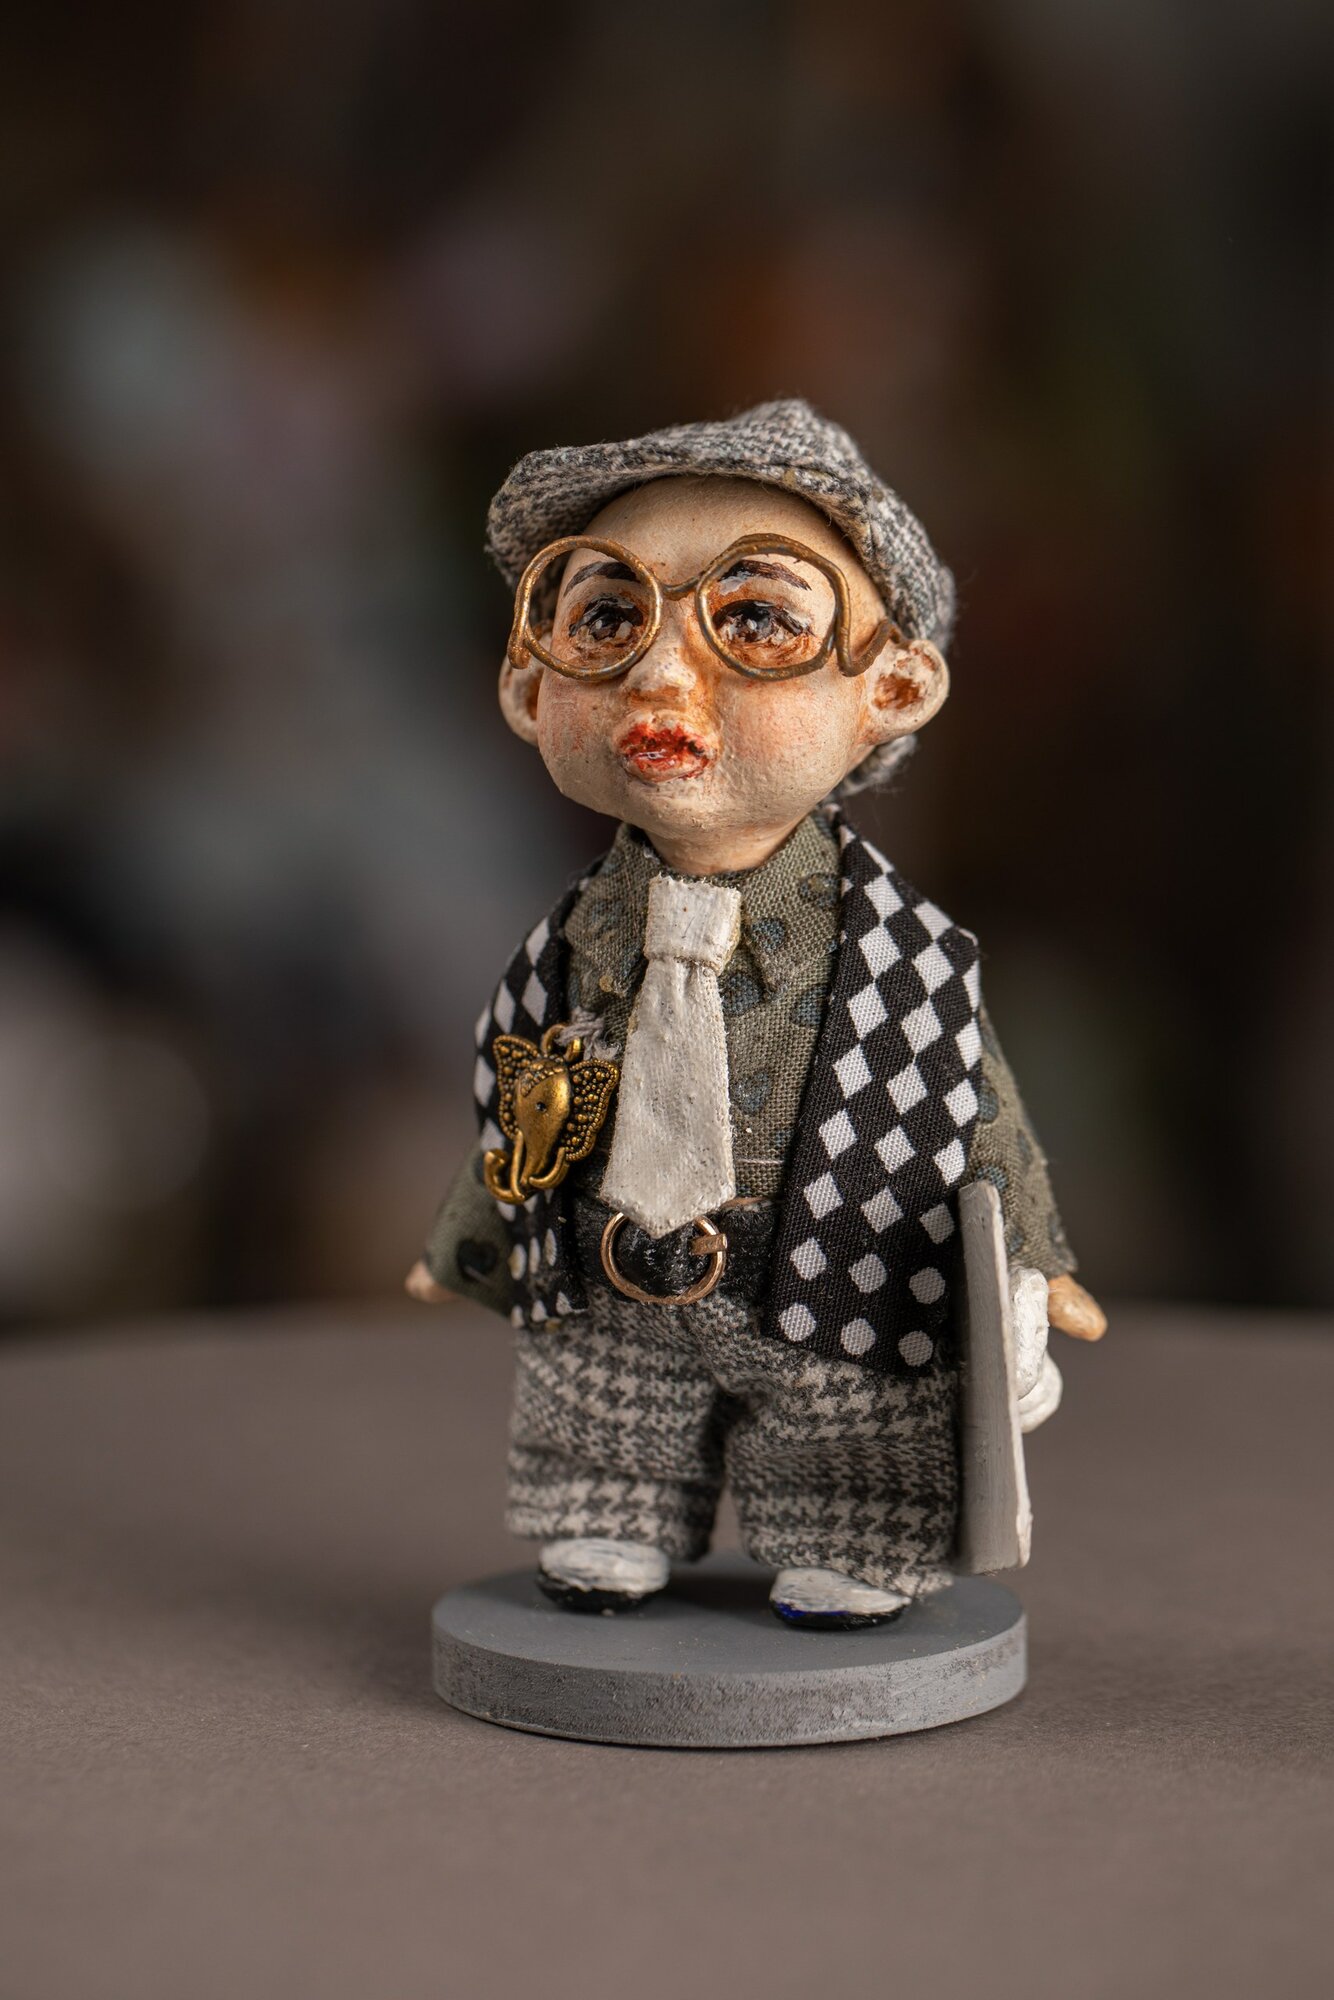 Авторская кукла "Малыш шахматист" ручной работы, интерьерная